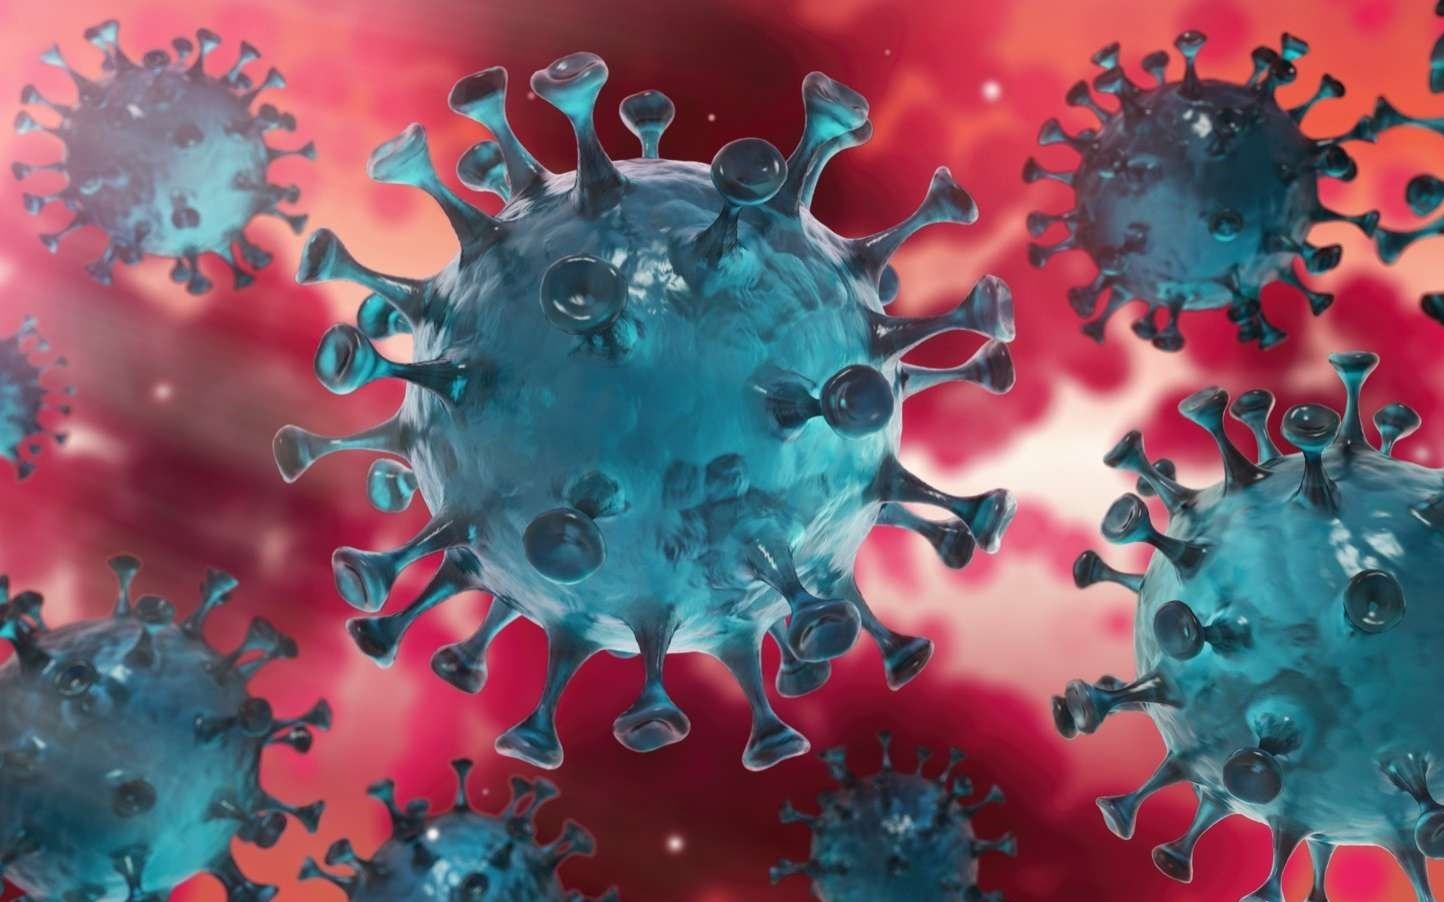 هشدار محققان درباره زنده ماندن ویروس کرونا در خانه بهبودیافتگان